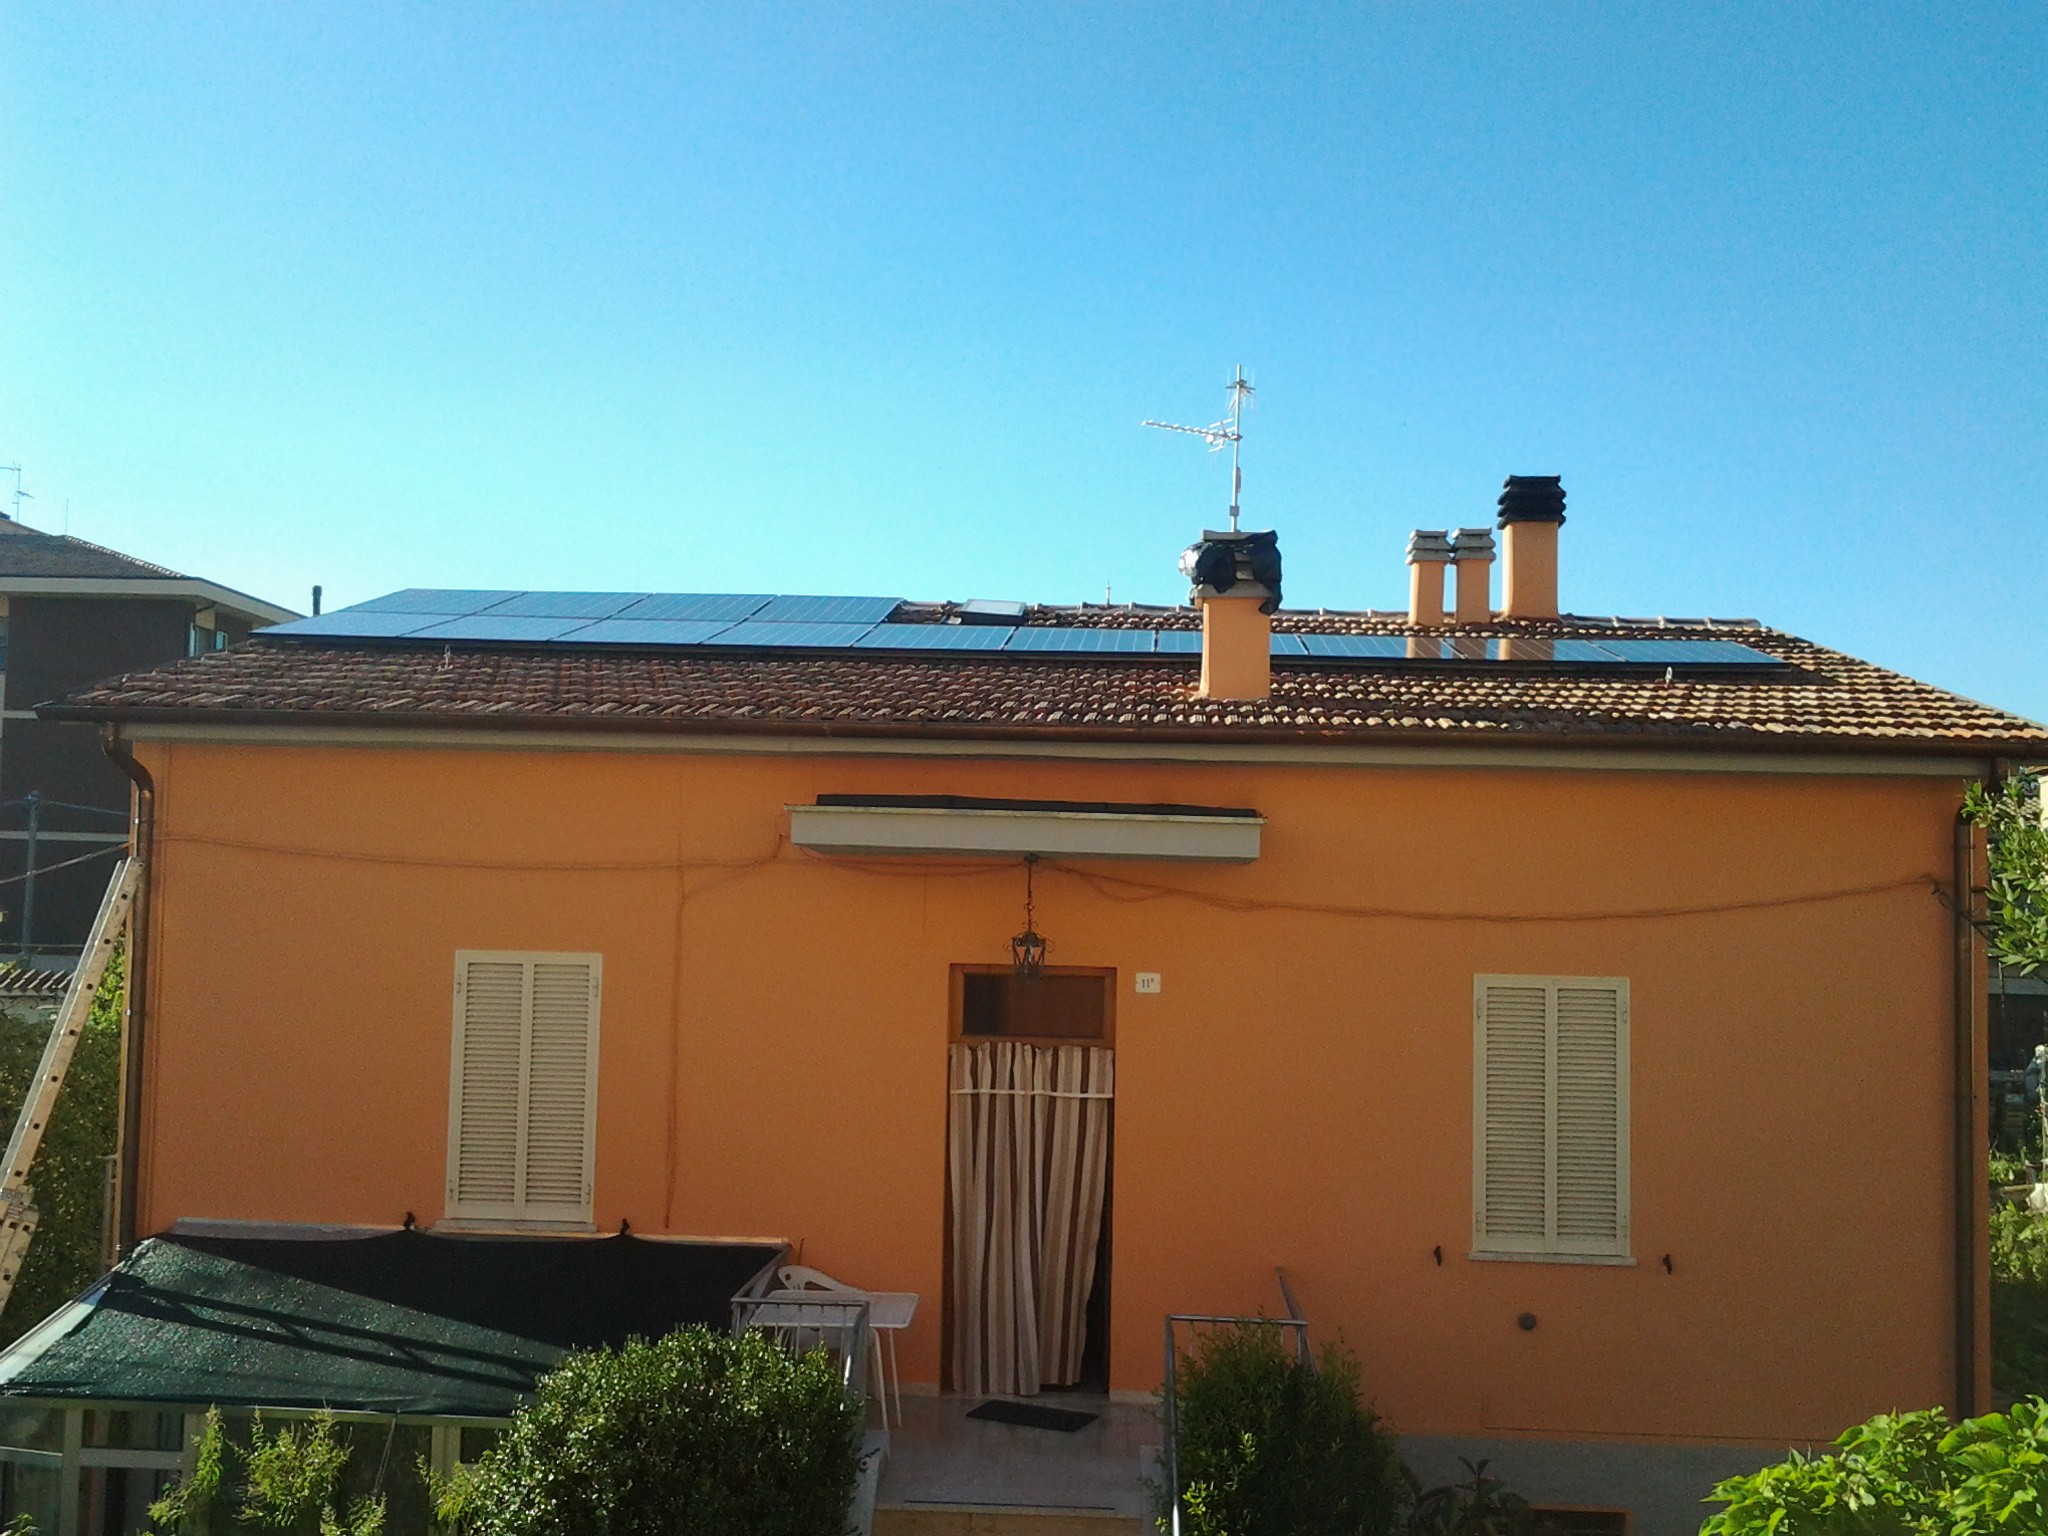 Nuovo impianto Fotovoltaico in Scambio Sul posto SunPower-Lightland a Foligno, Perugia, Umbria